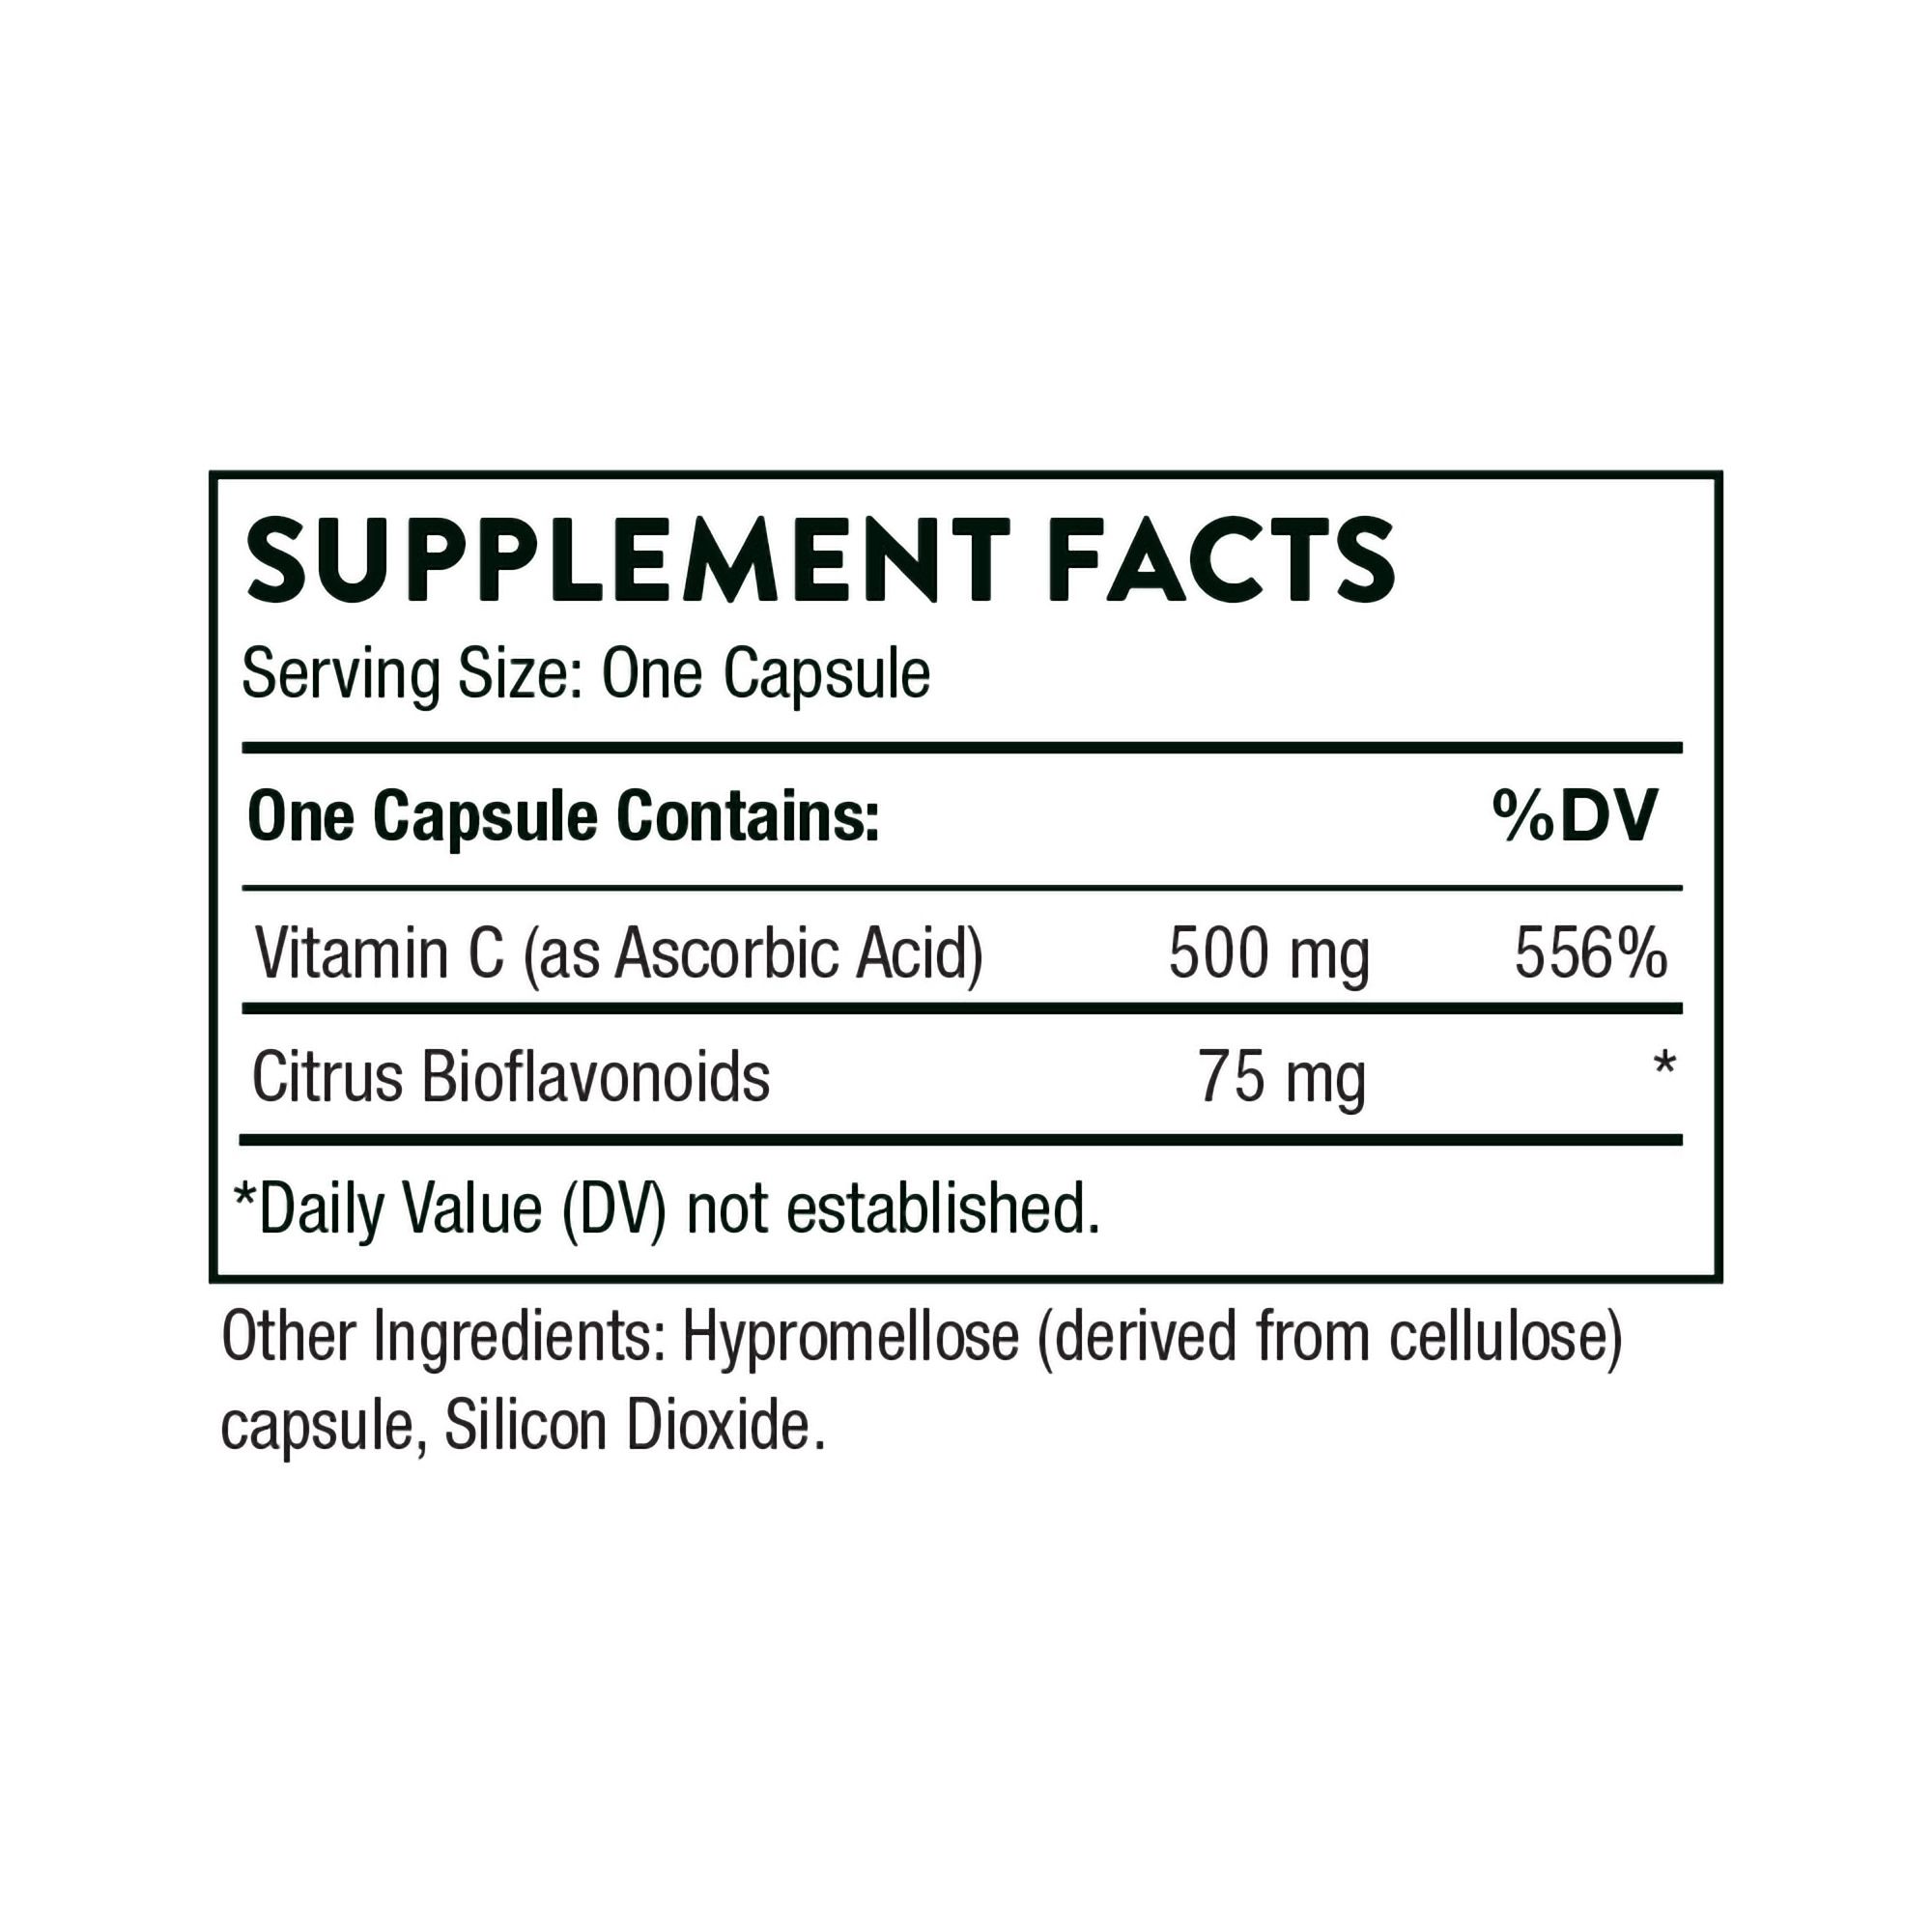 Thorne Vitamin C with Flavonoids Capsules - 90 ct